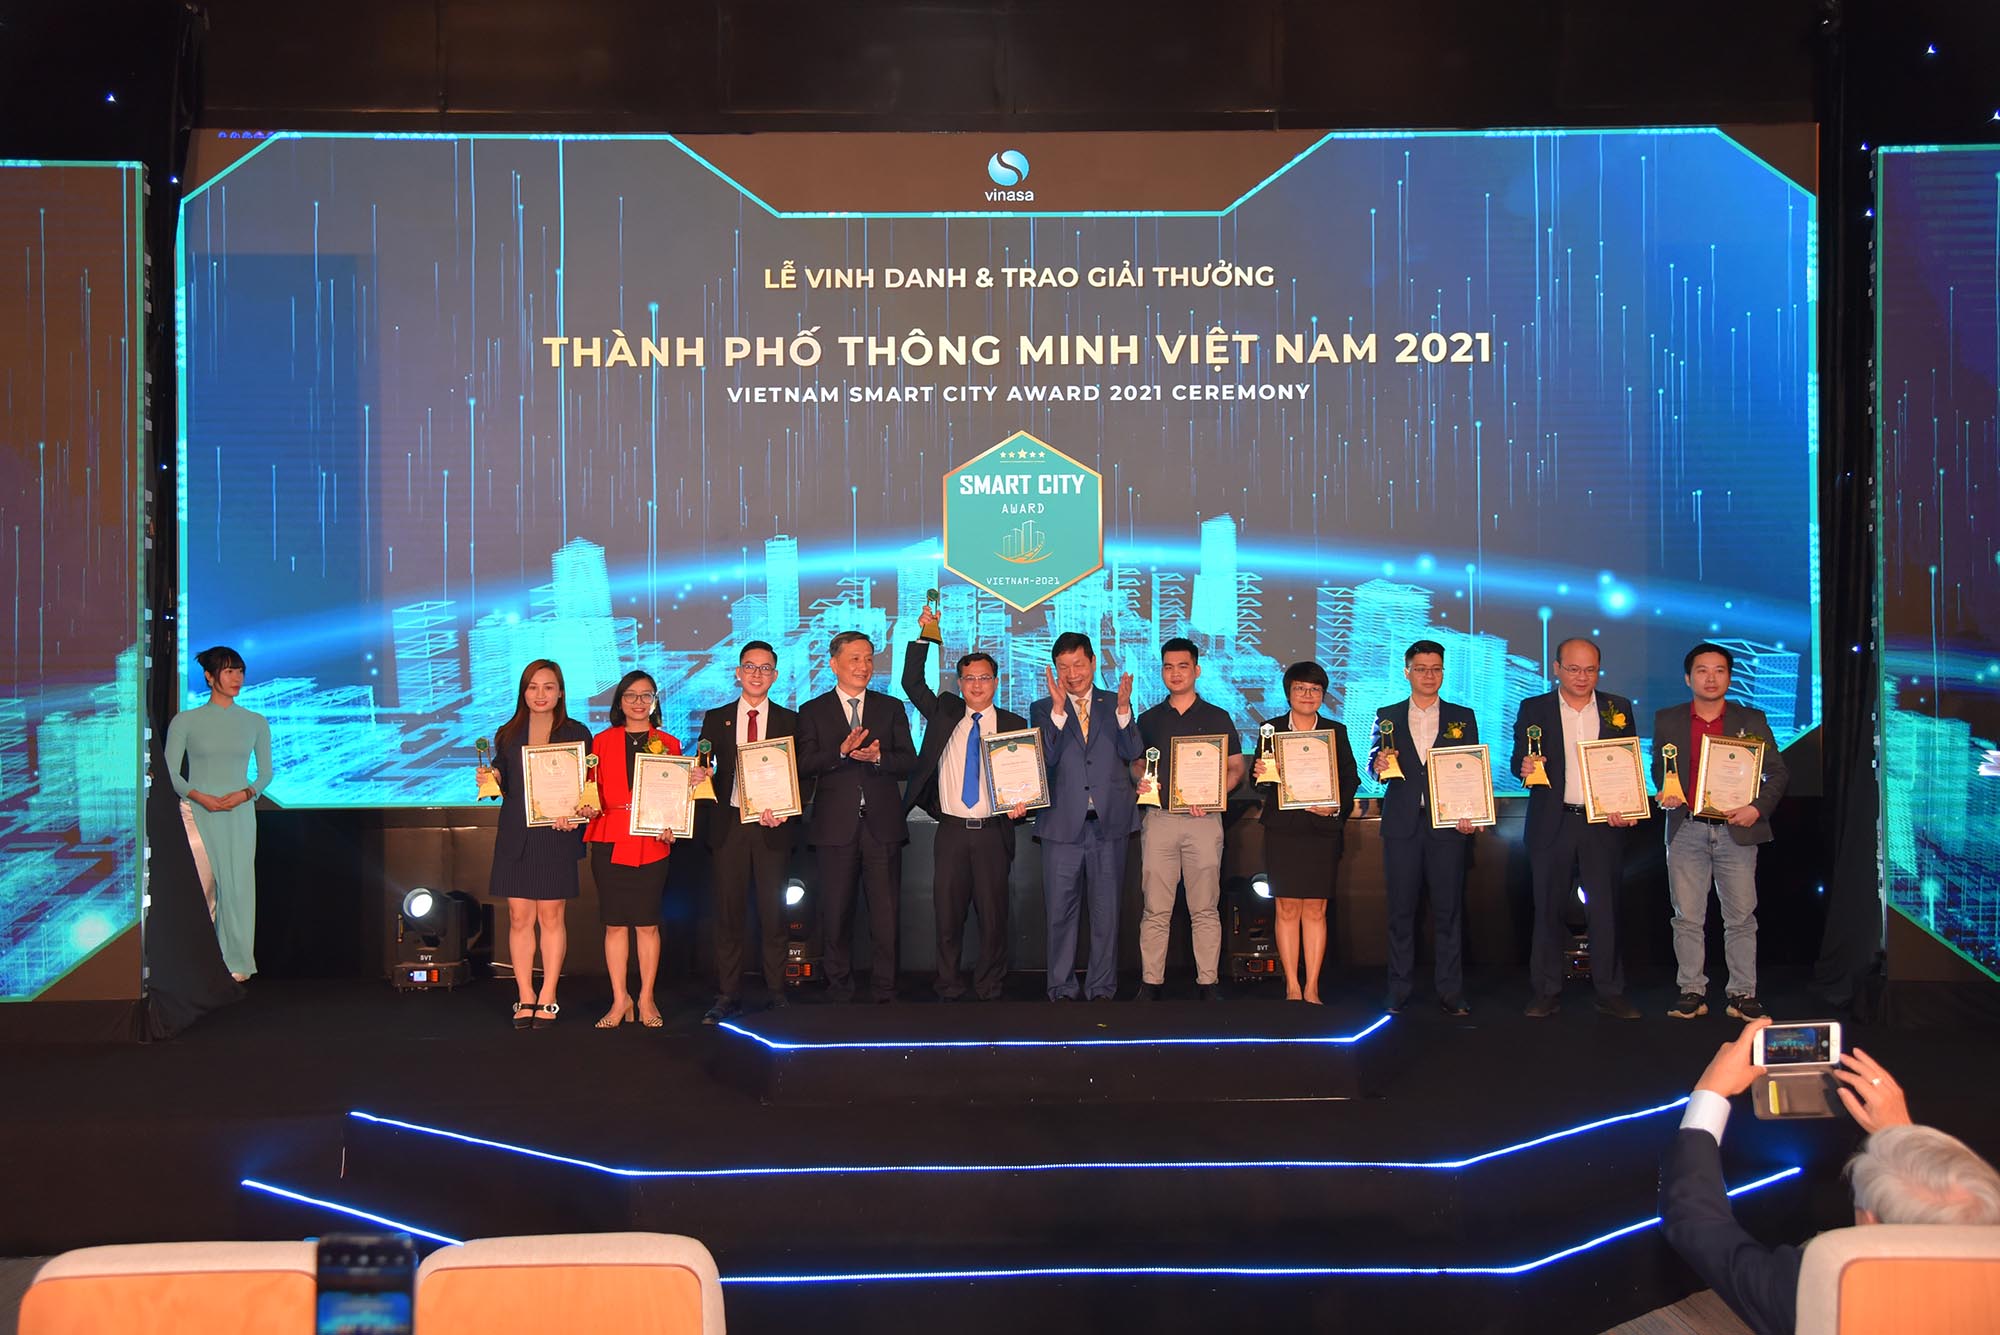 04 nền tảng, giải pháp của FPT giành giải thưởng Thành phố Thông minh Việt Nam 2021